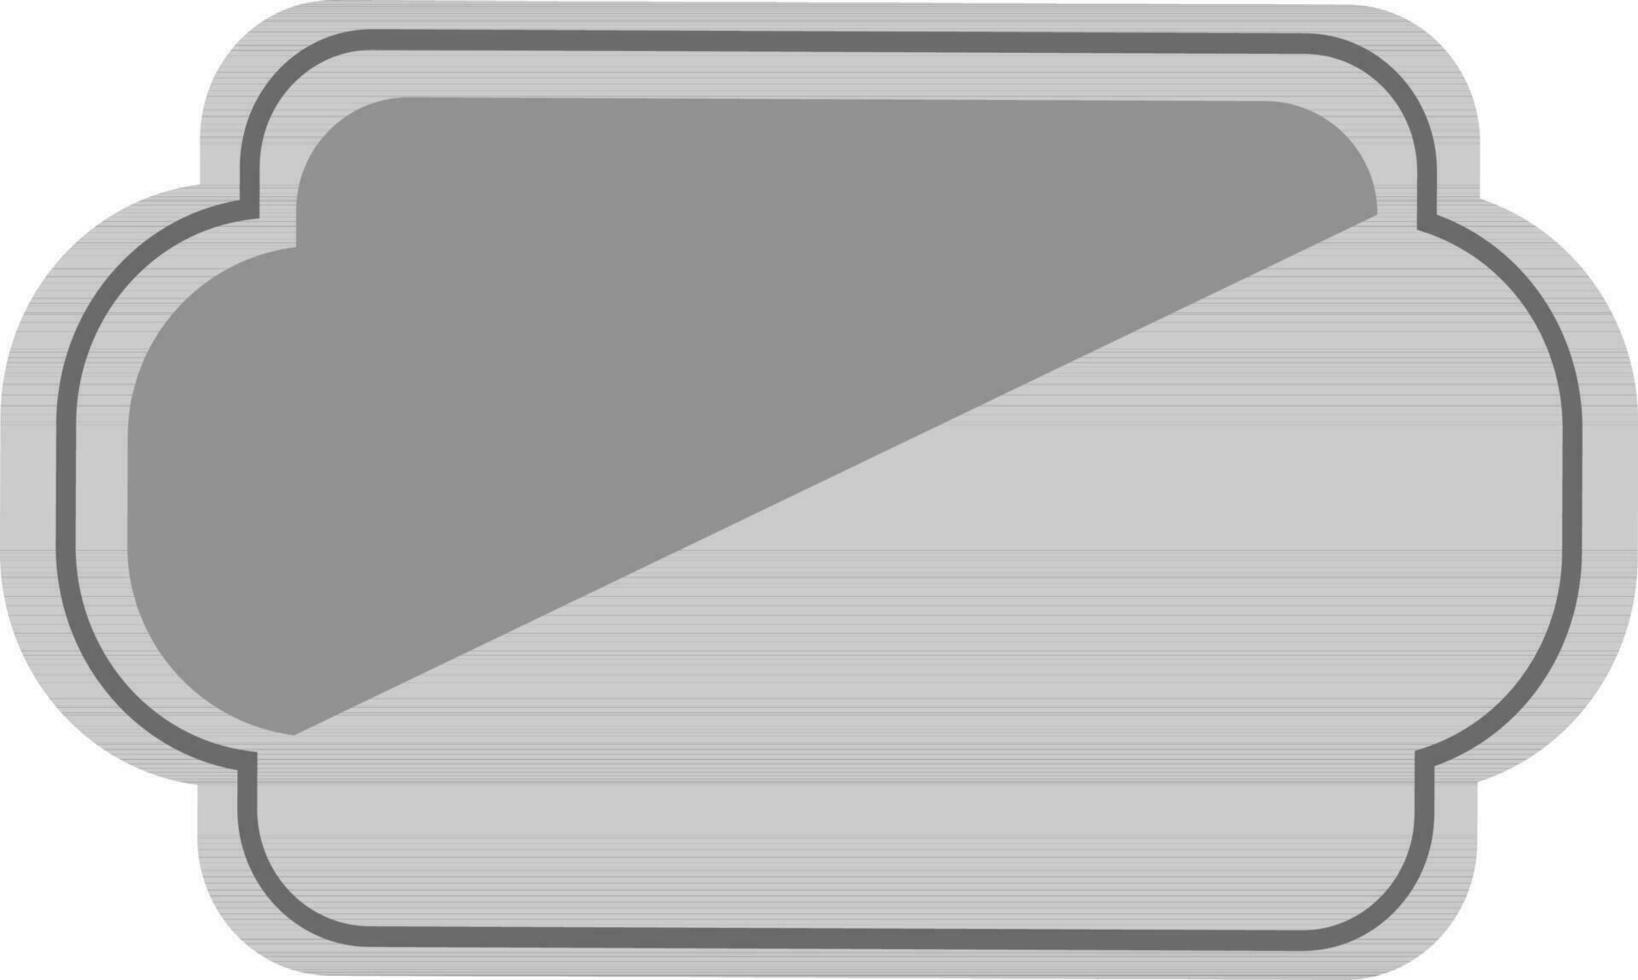 blanco gris cinta o pegatina. vector